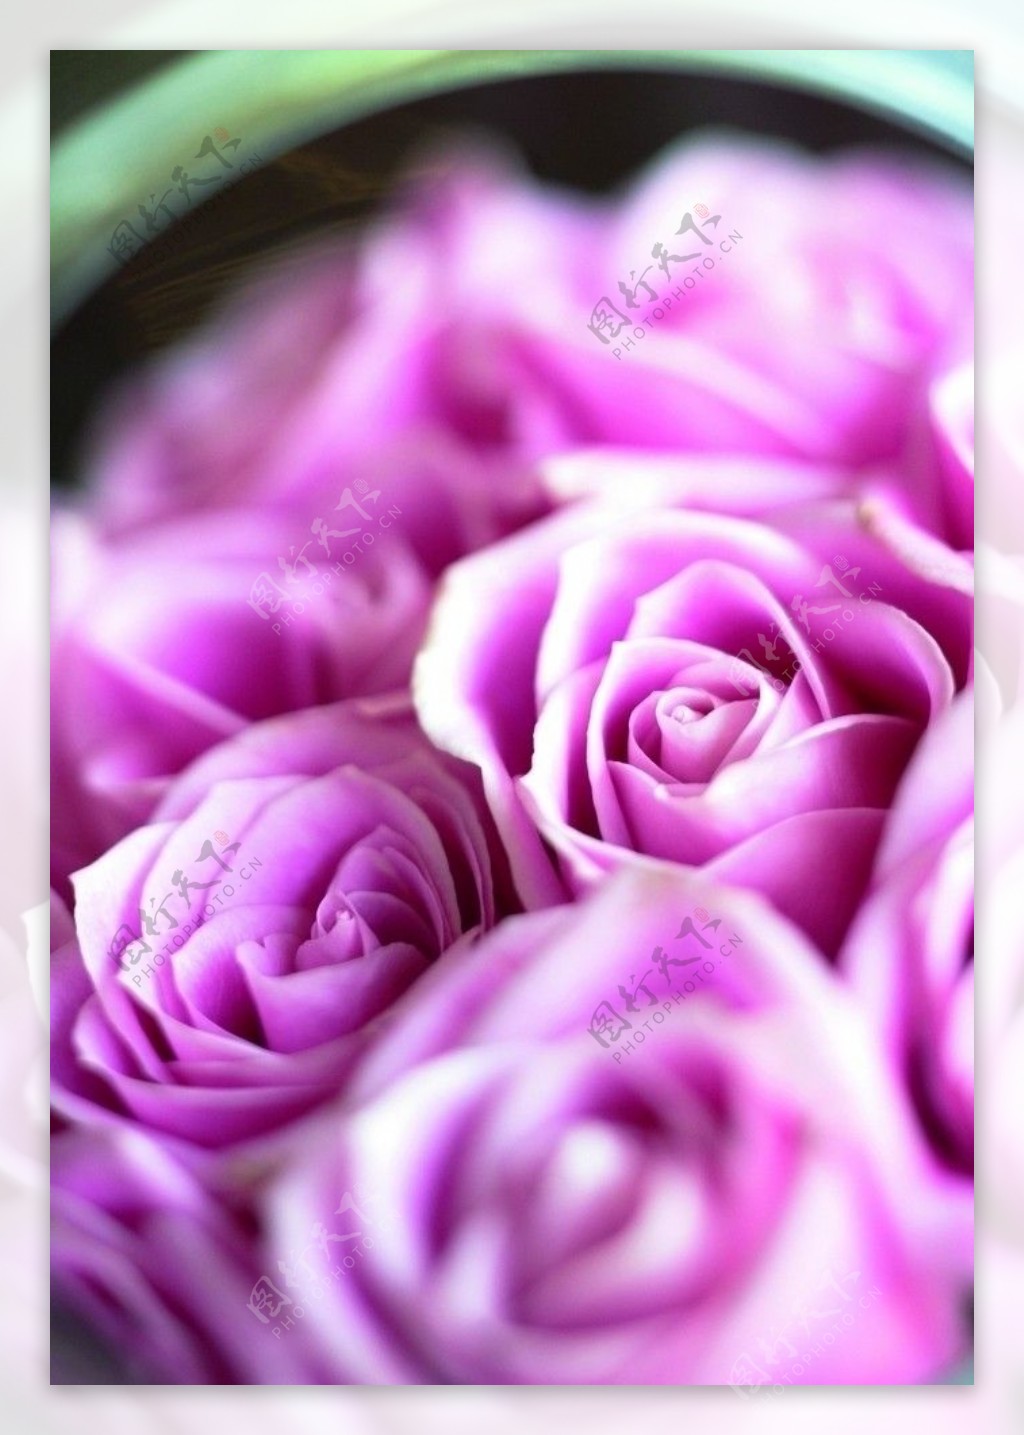 品种和色彩比较罕见的玫瑰花图片_花卉图片_3g图片大全